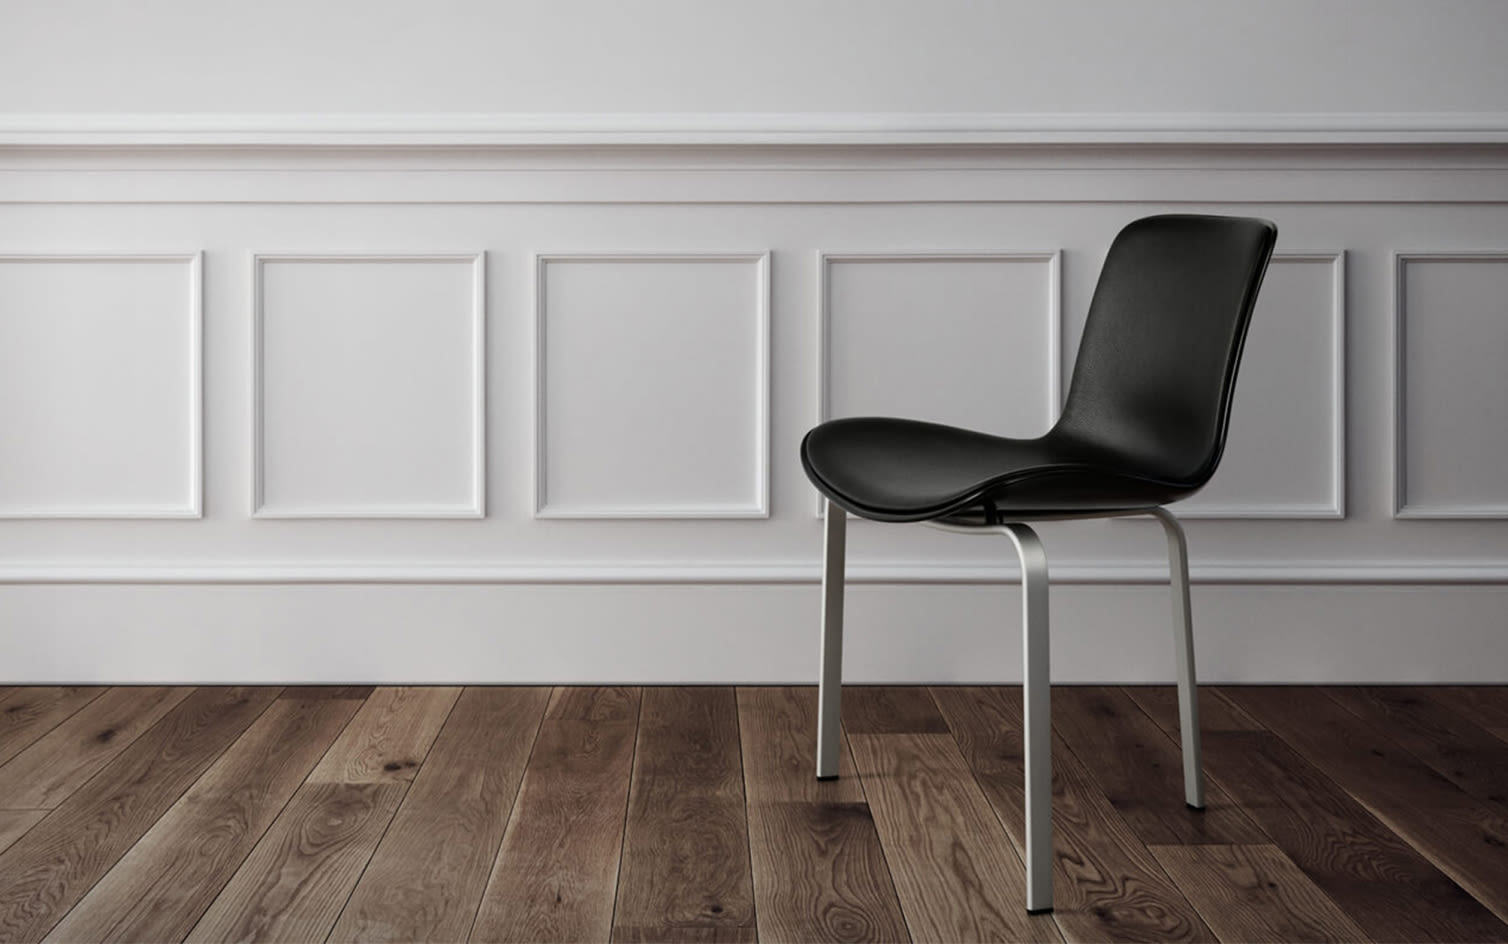 Editorial Splash 9 | Ikoniska stolar från Fritz Hansen – dansk design i sitt esse